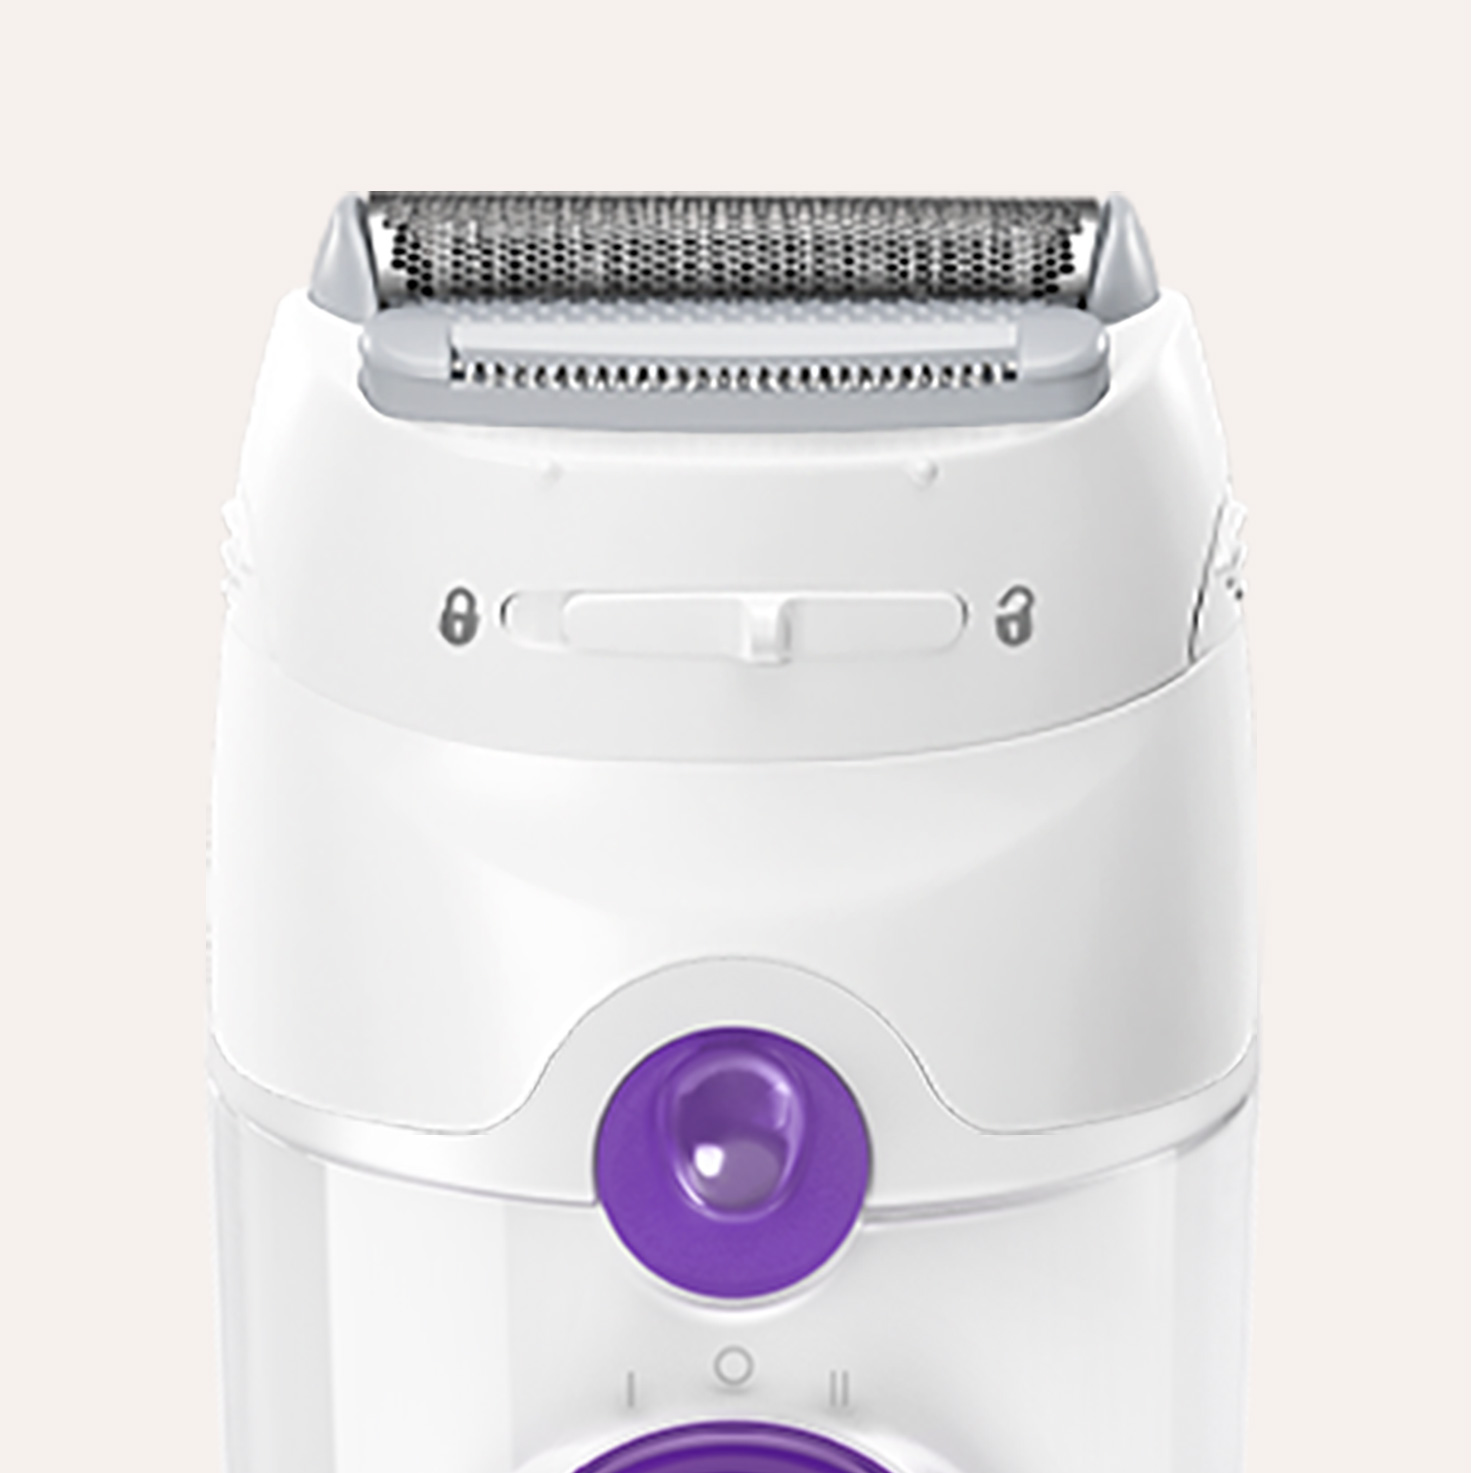 Silk-épil 5-825 Power, Epilator for Beginners for Gentle Hair Removal,  Smart Light